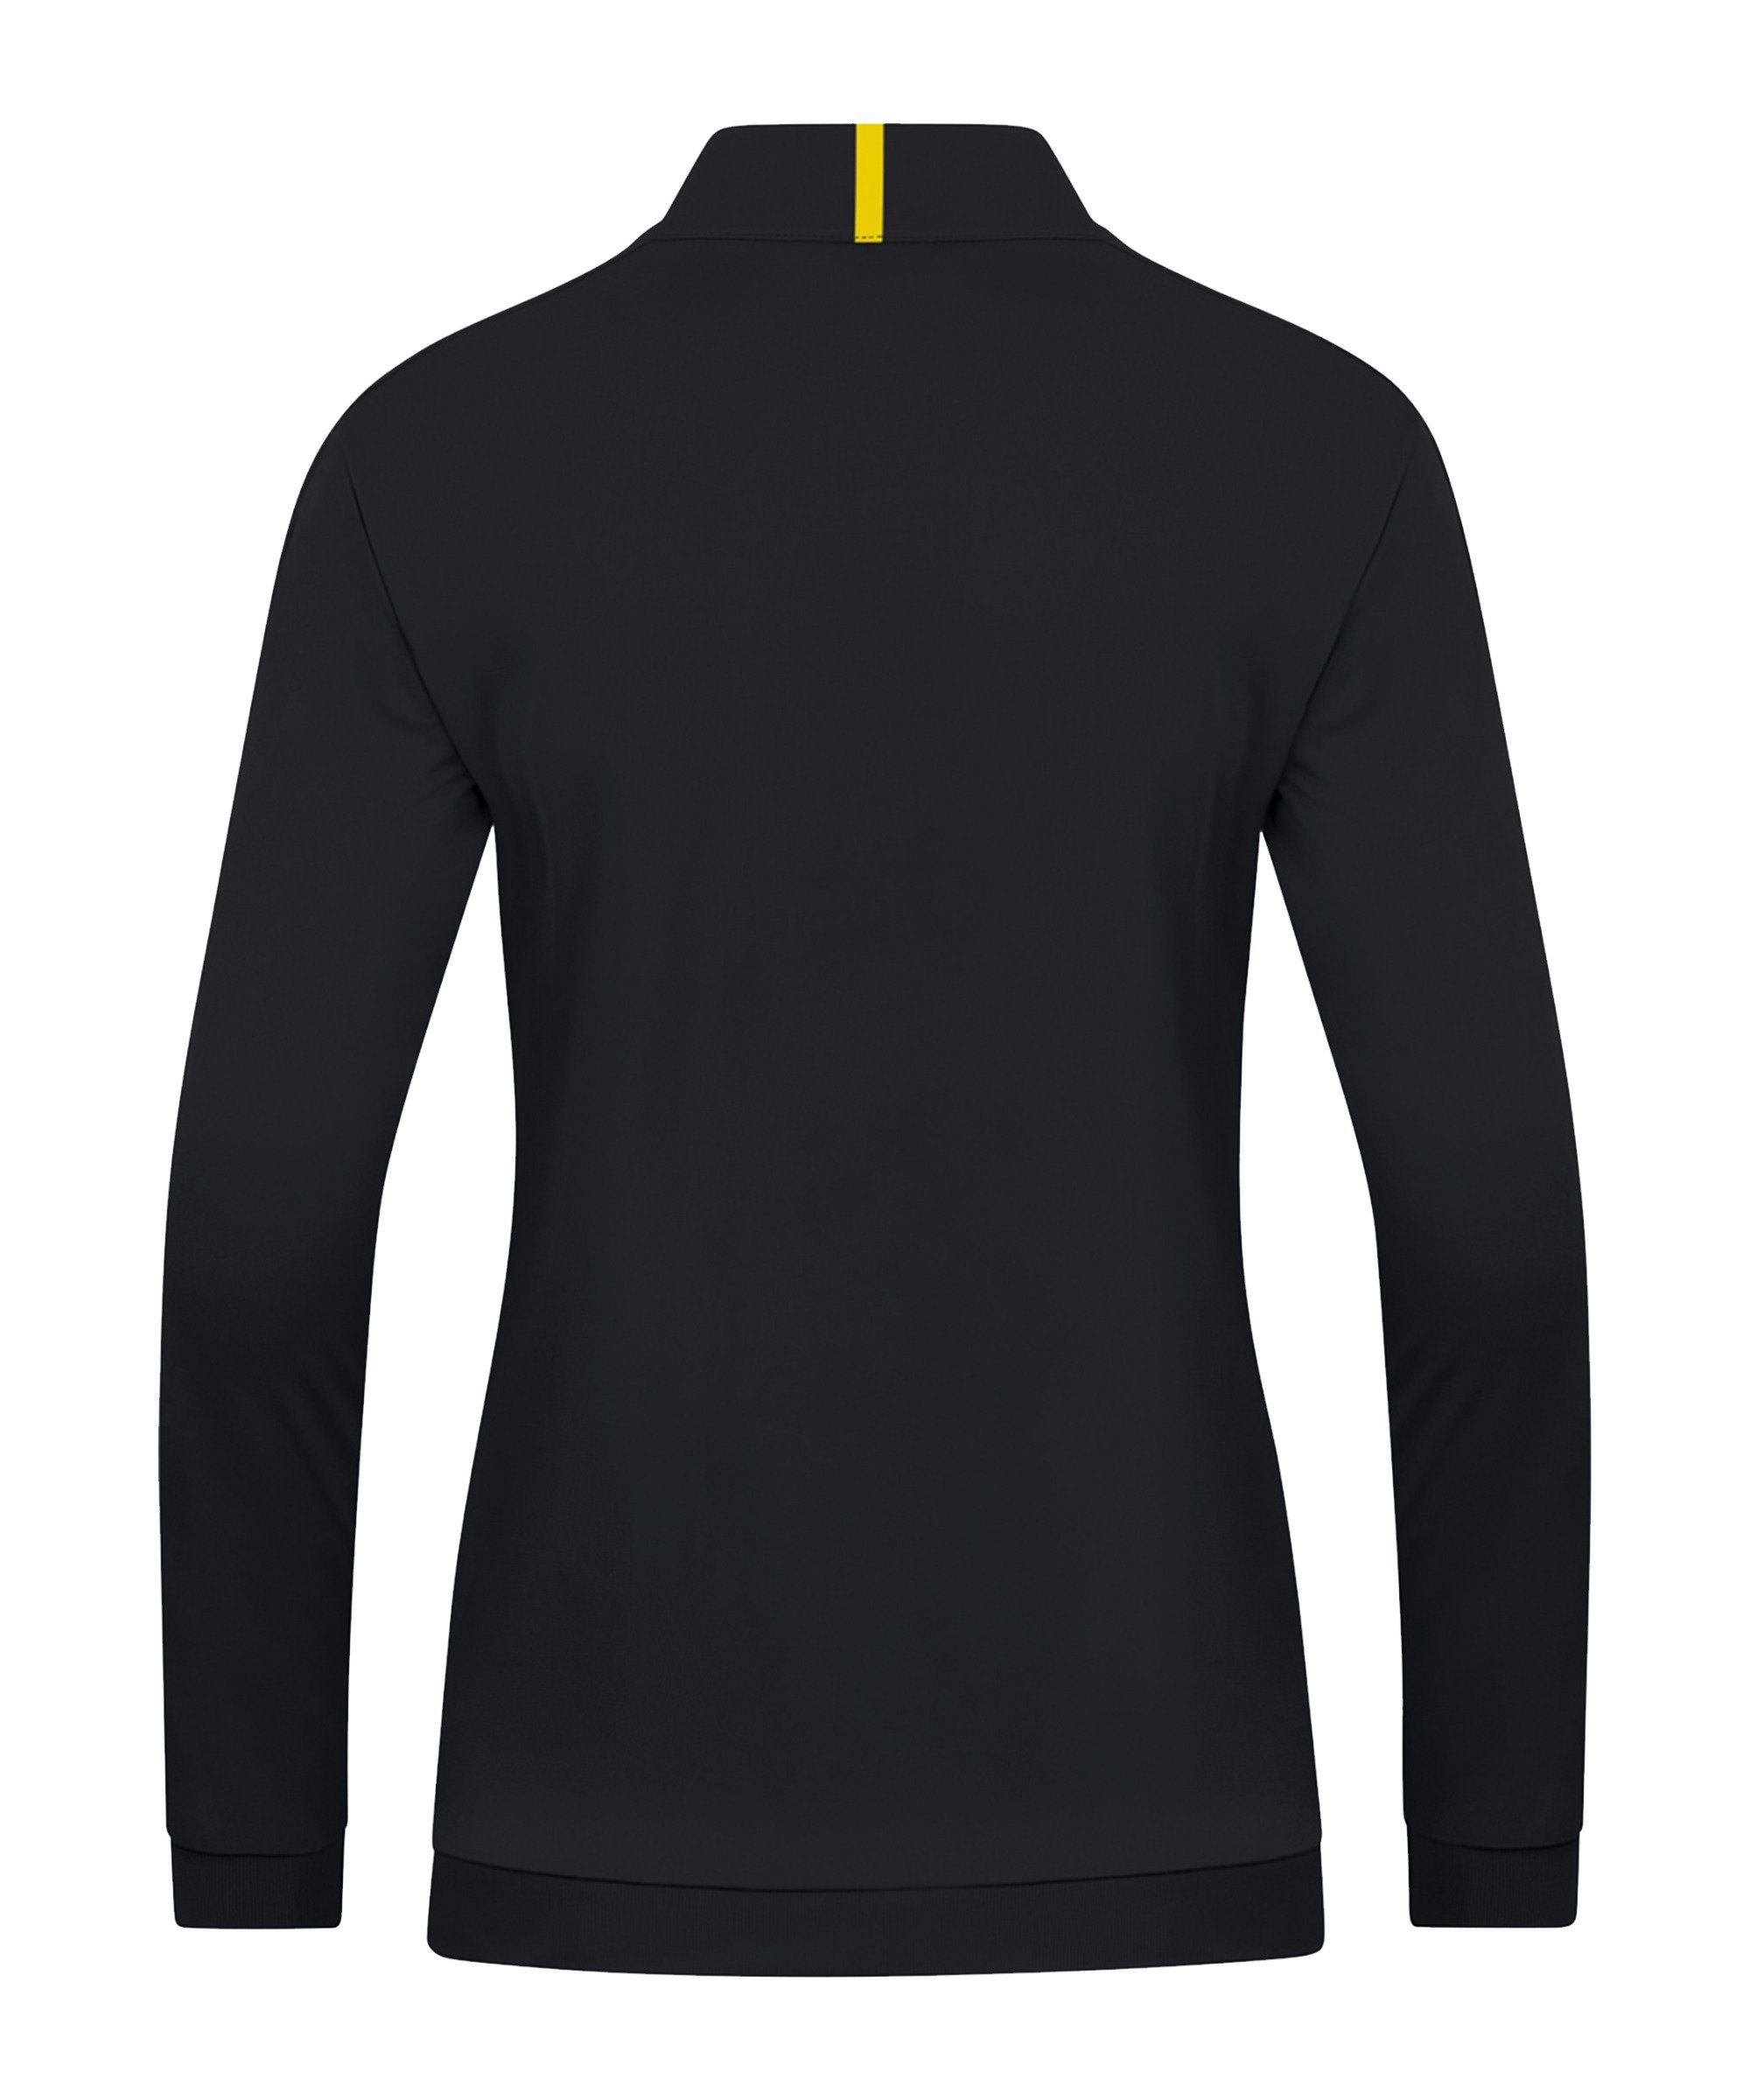 schwarzgelb Polyesterjacke Jako Damen Challenge Trainingsjacke